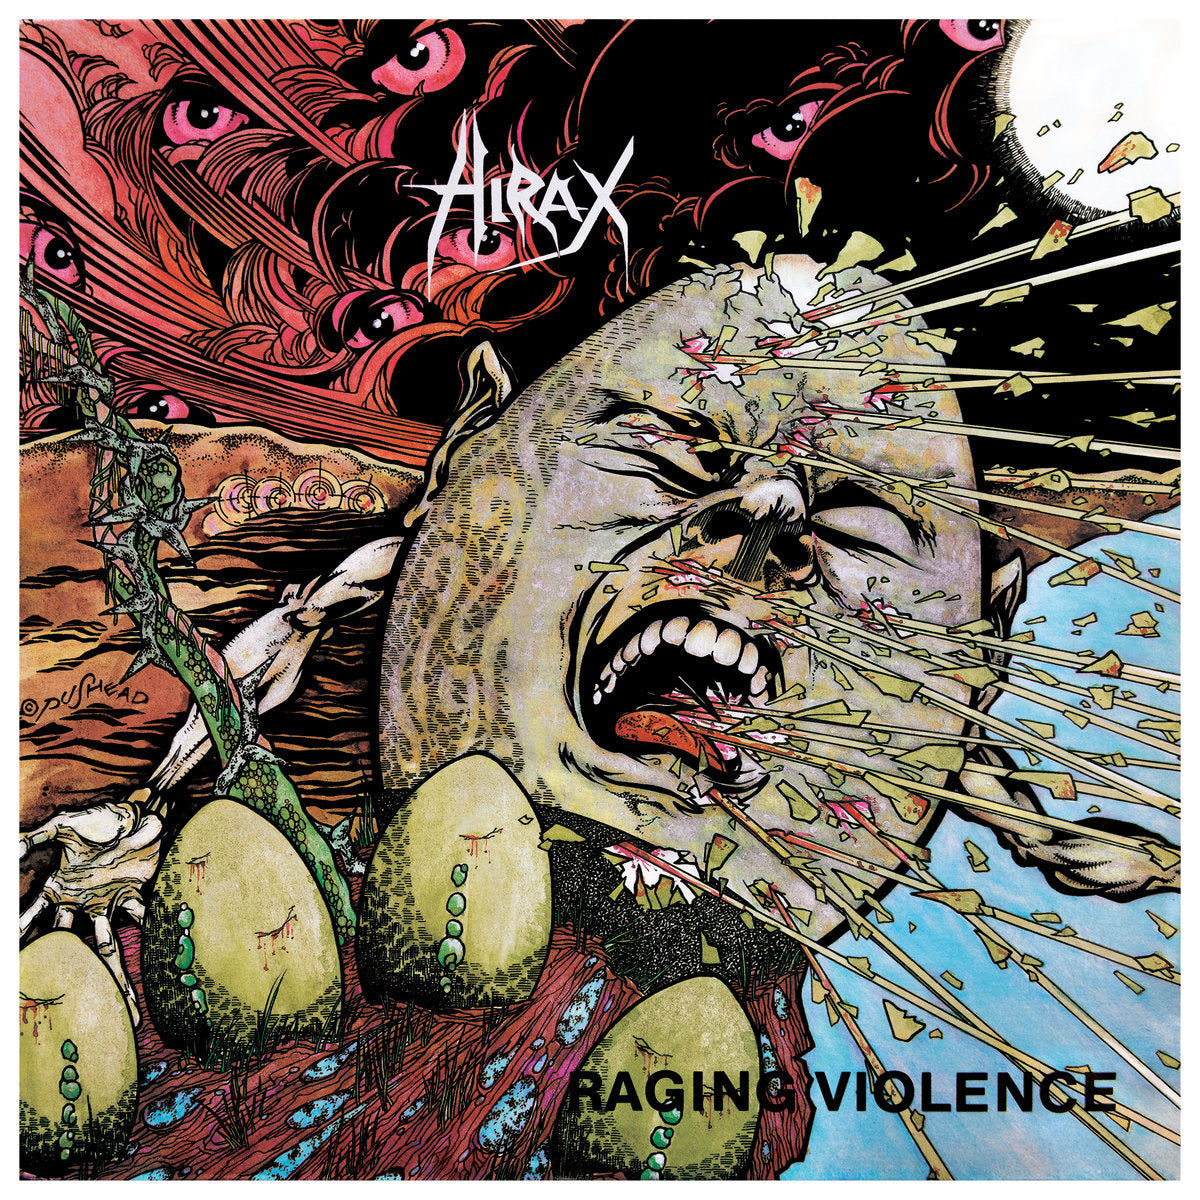 Hirax "Raging Violence" LP (COLOR vinyl)